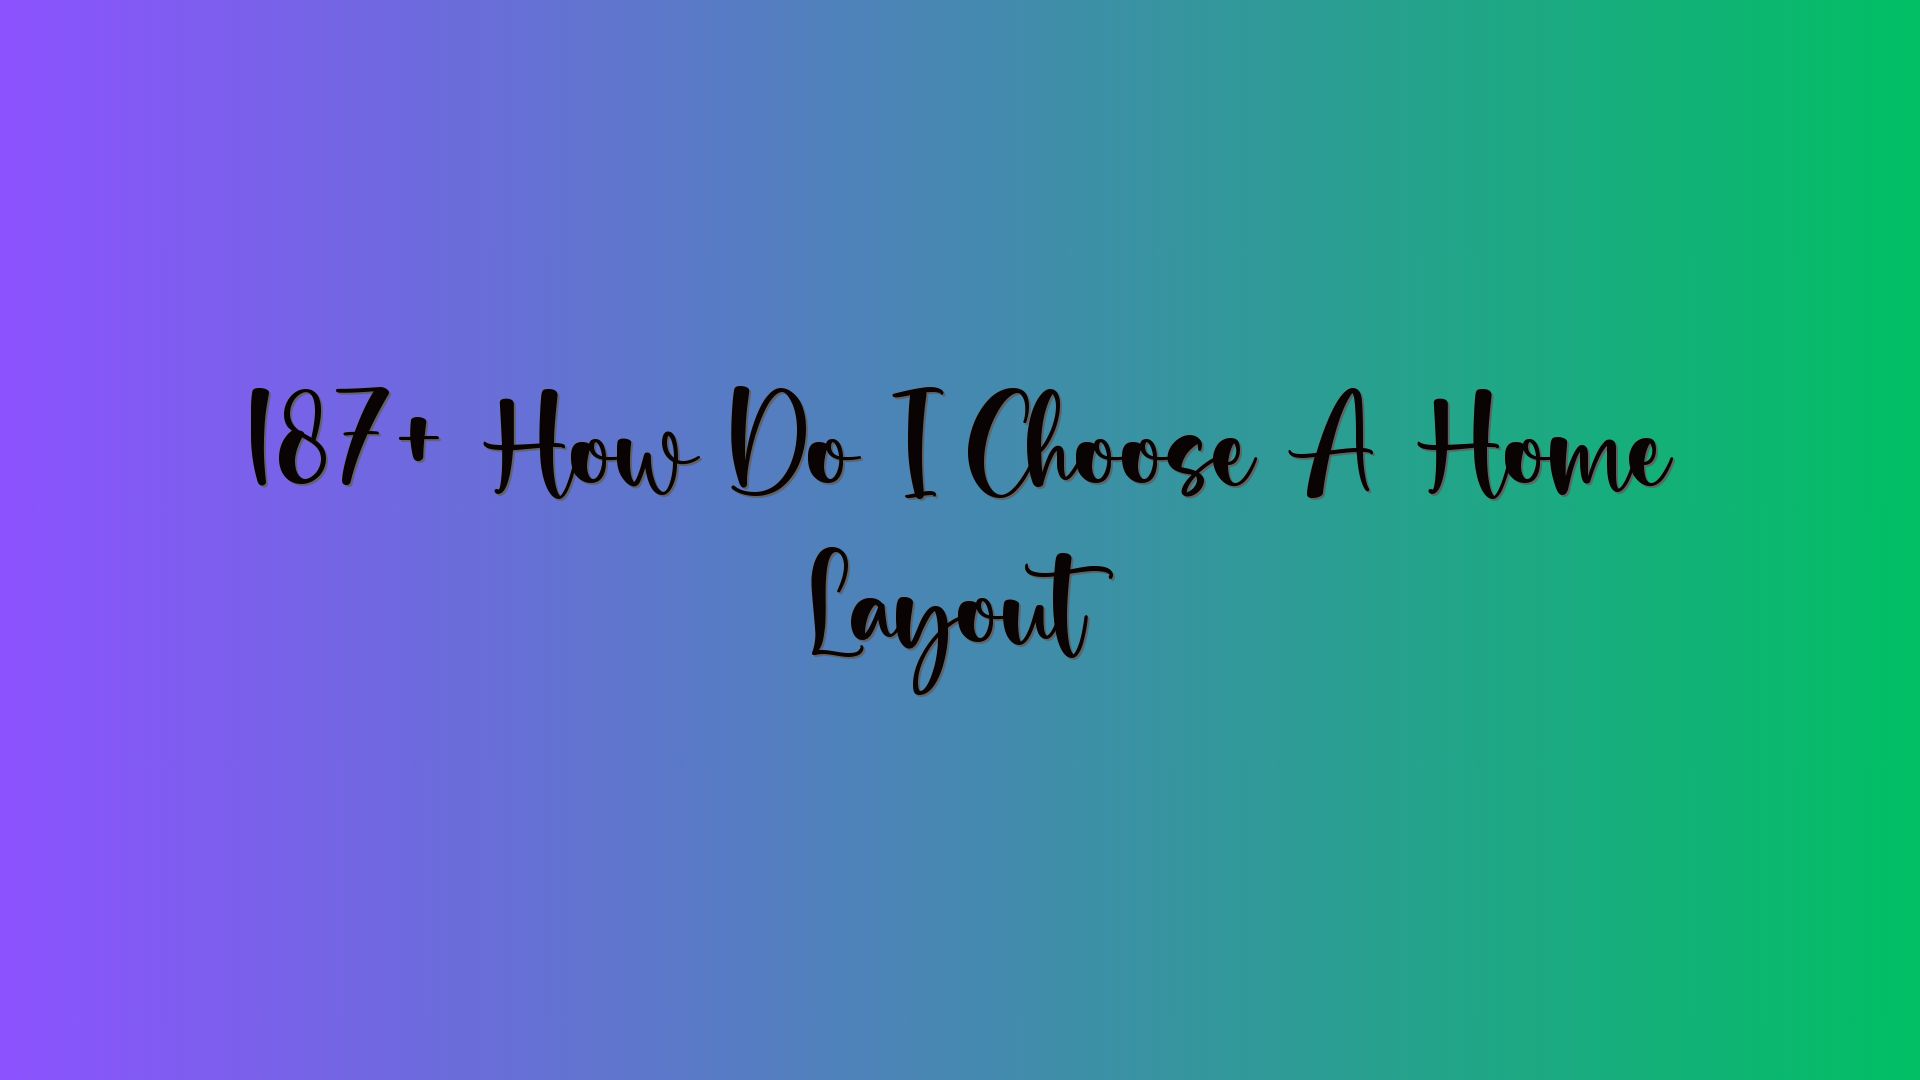 187+ How Do I Choose A Home Layout